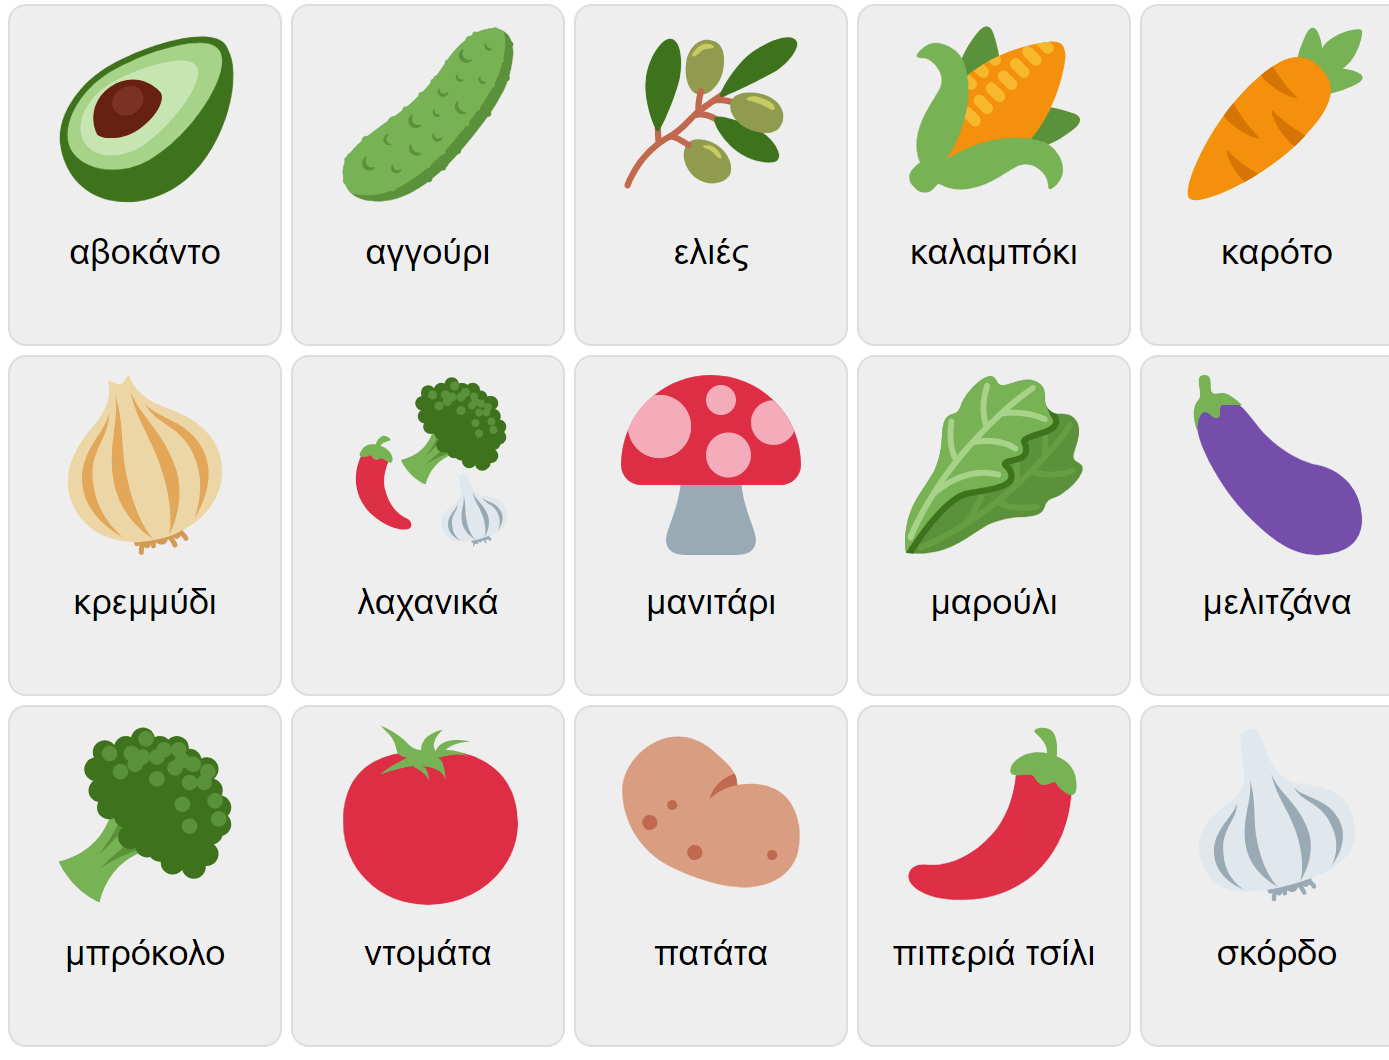 Vegetables in Greek